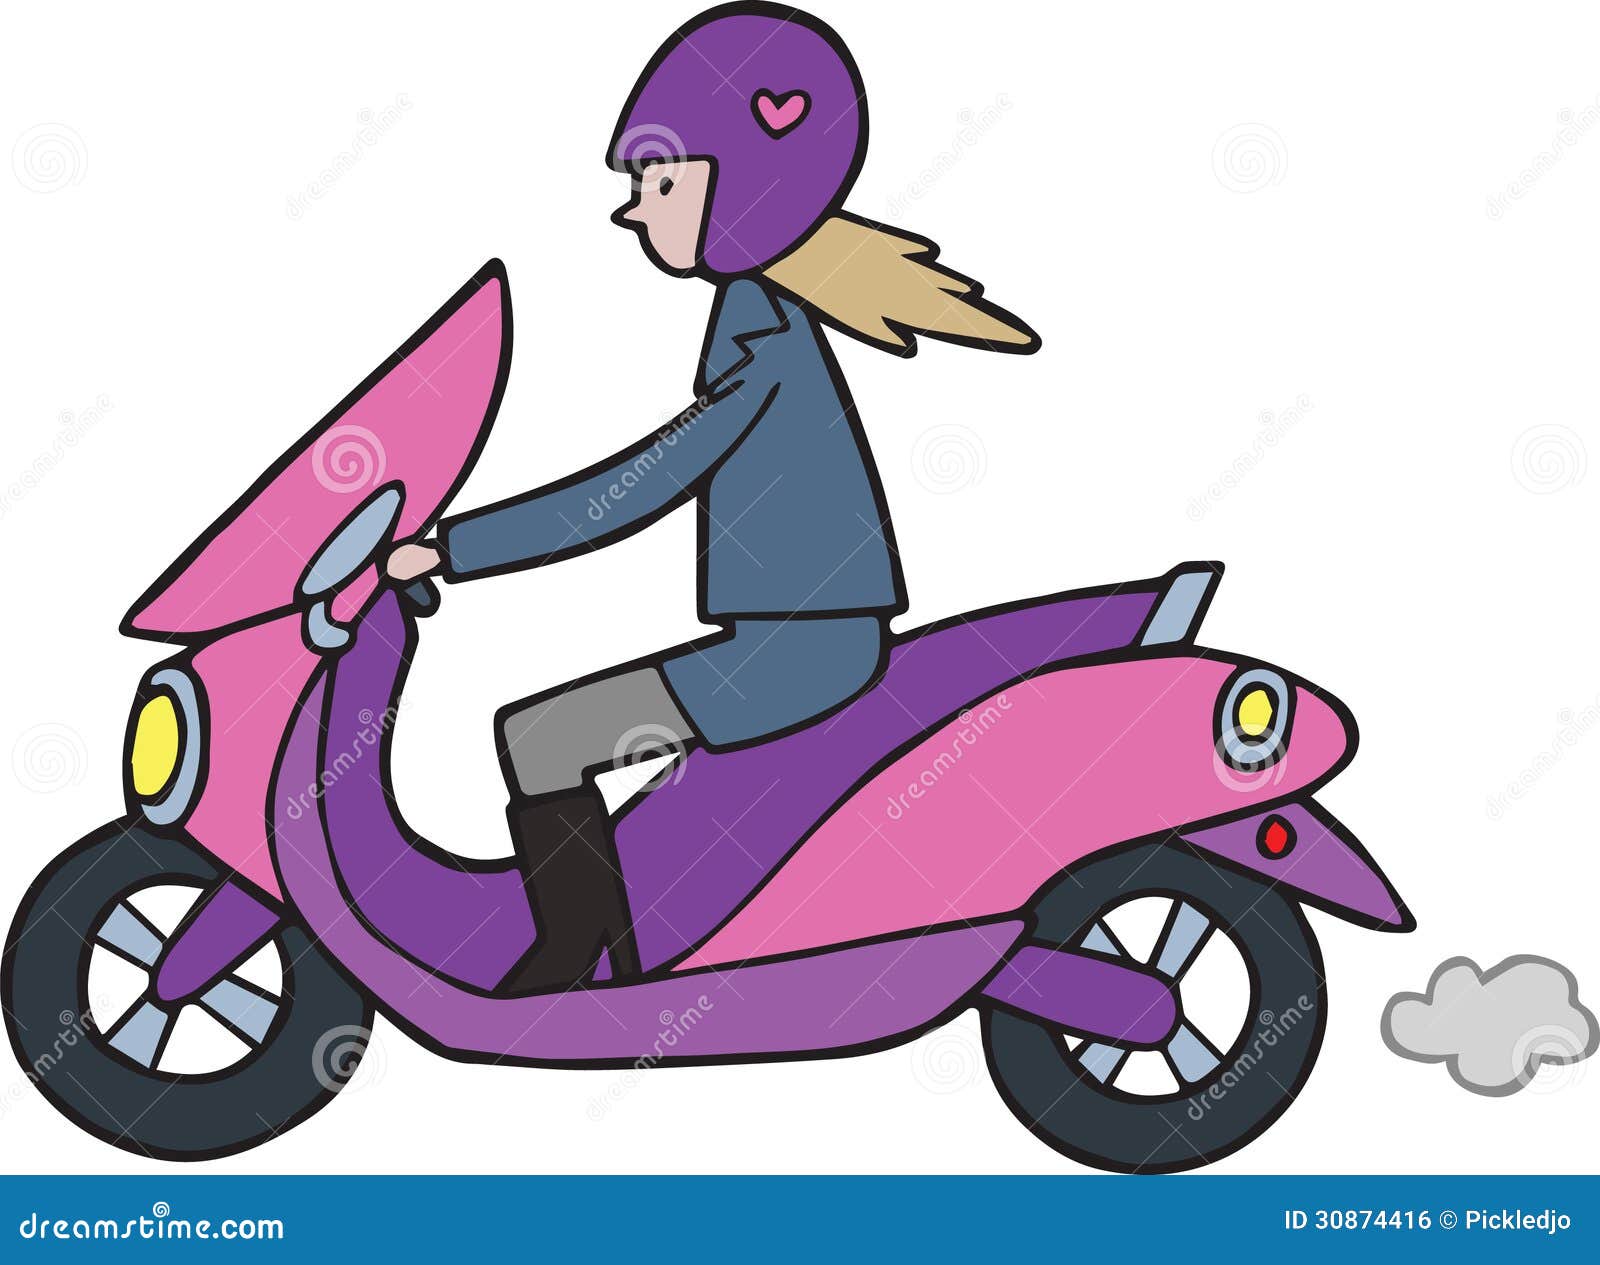 cute-cartoon-girl-lambretta-moped-motorb